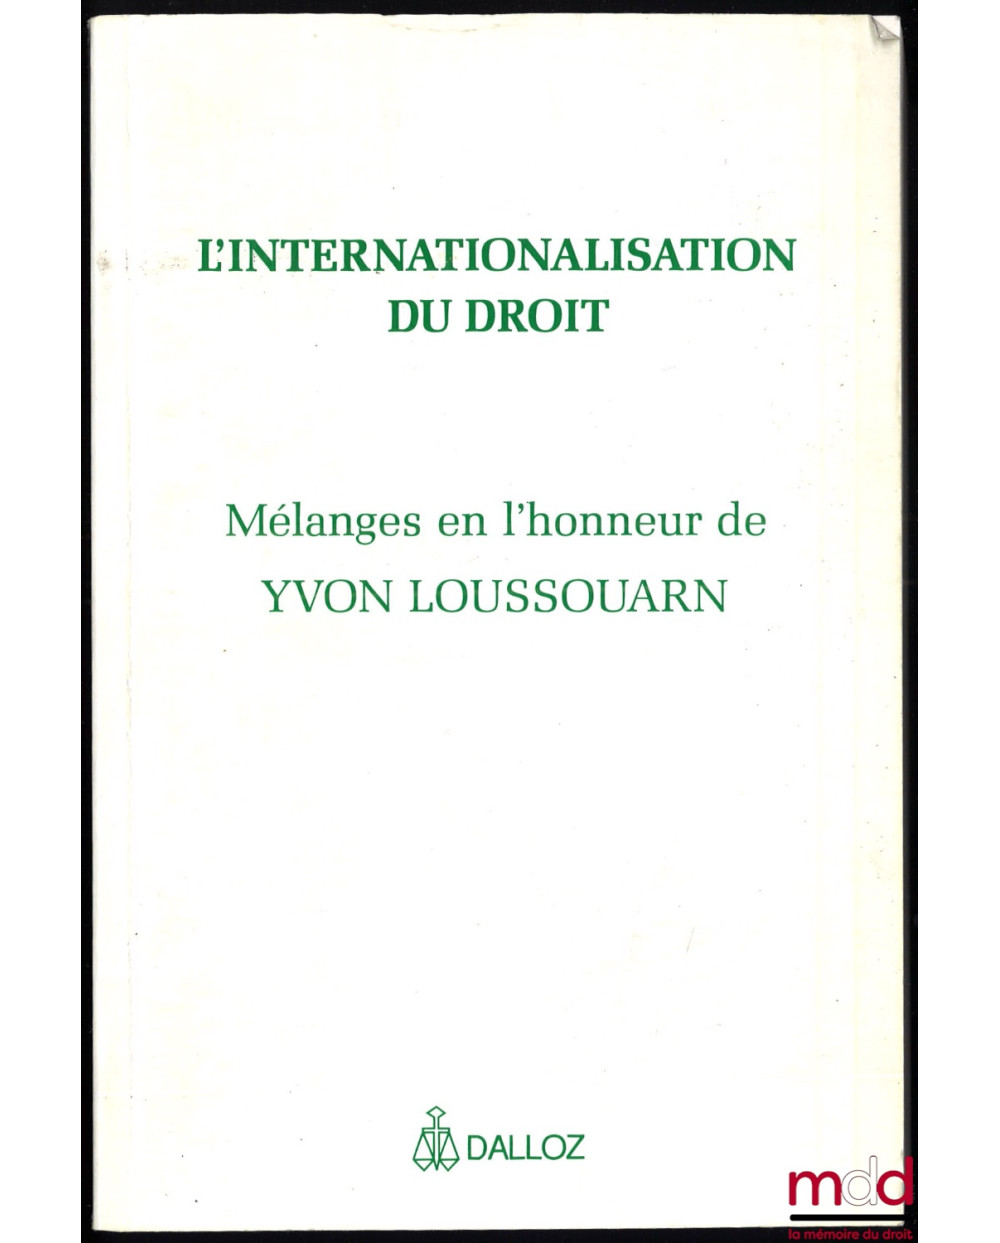 L’INTERNATIONALISATION DU DROIT, Mélanges en l’honneur de Yvon Loussouarn, avant-propos de Jacques Béguin et Pierre Bourel